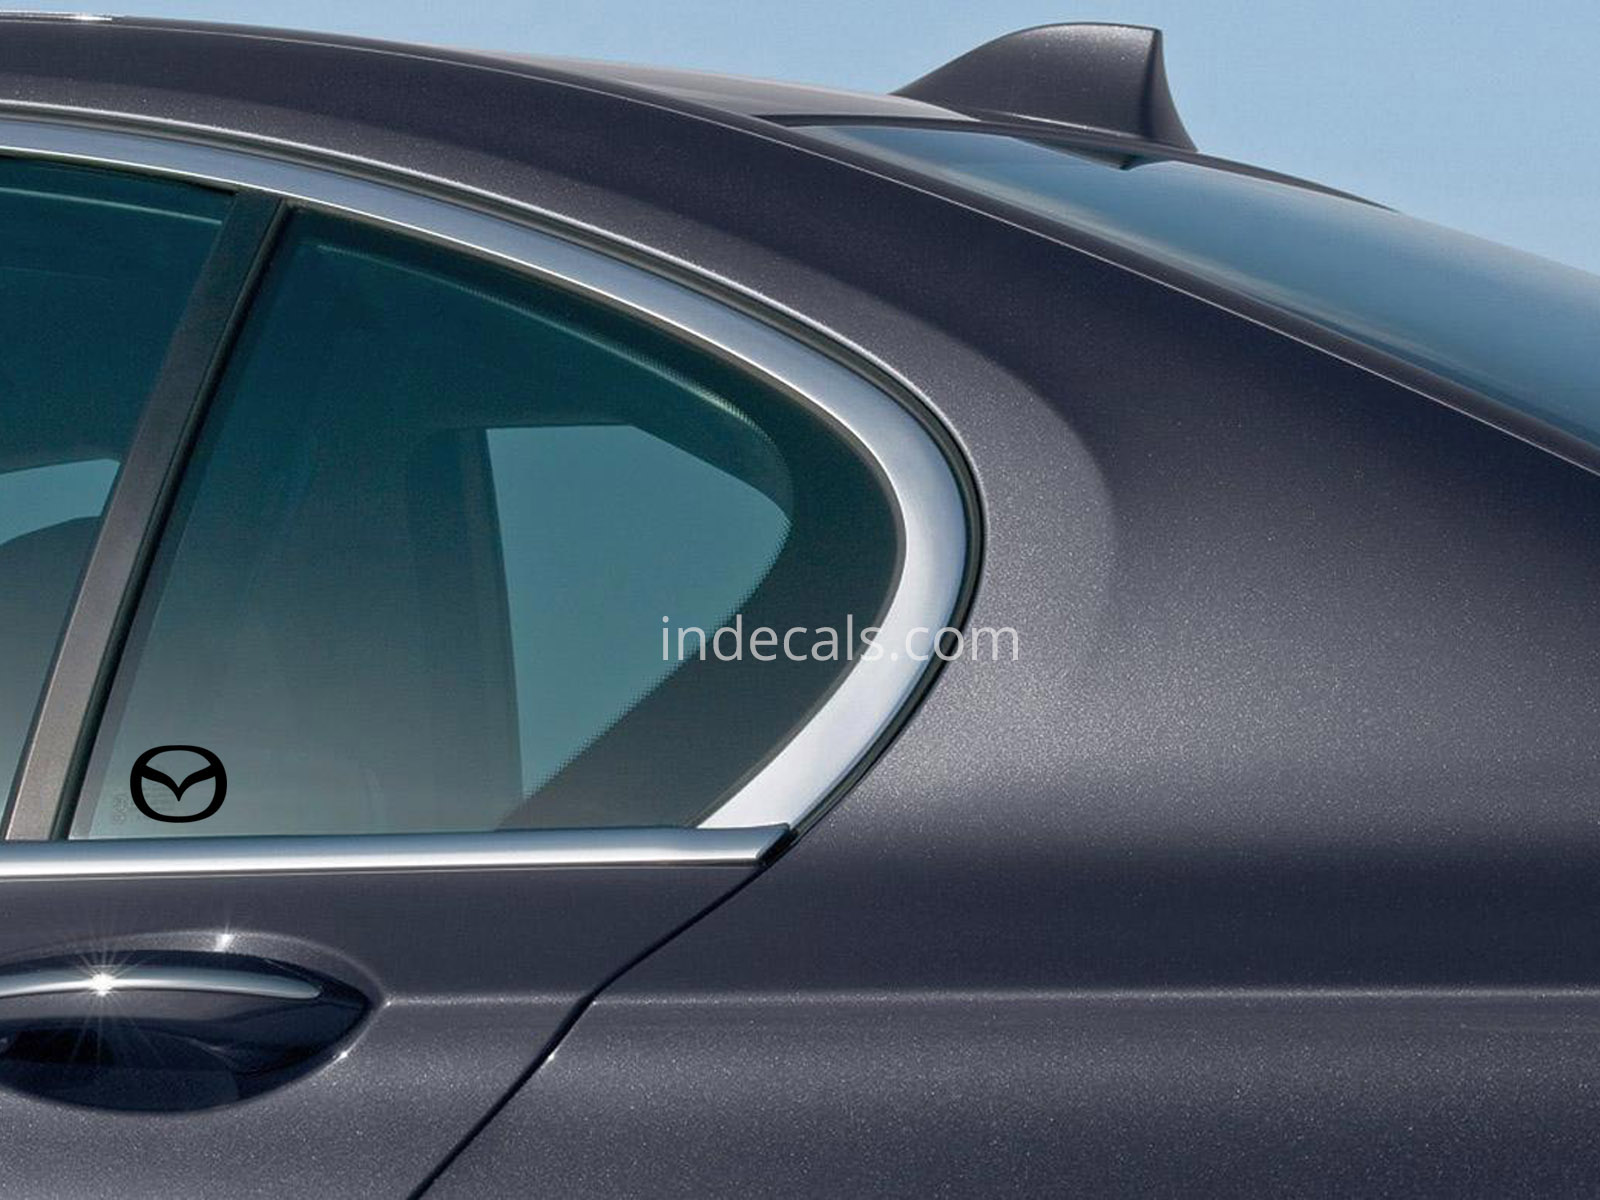 3 x Mazda Stickers for Rear Window - Black